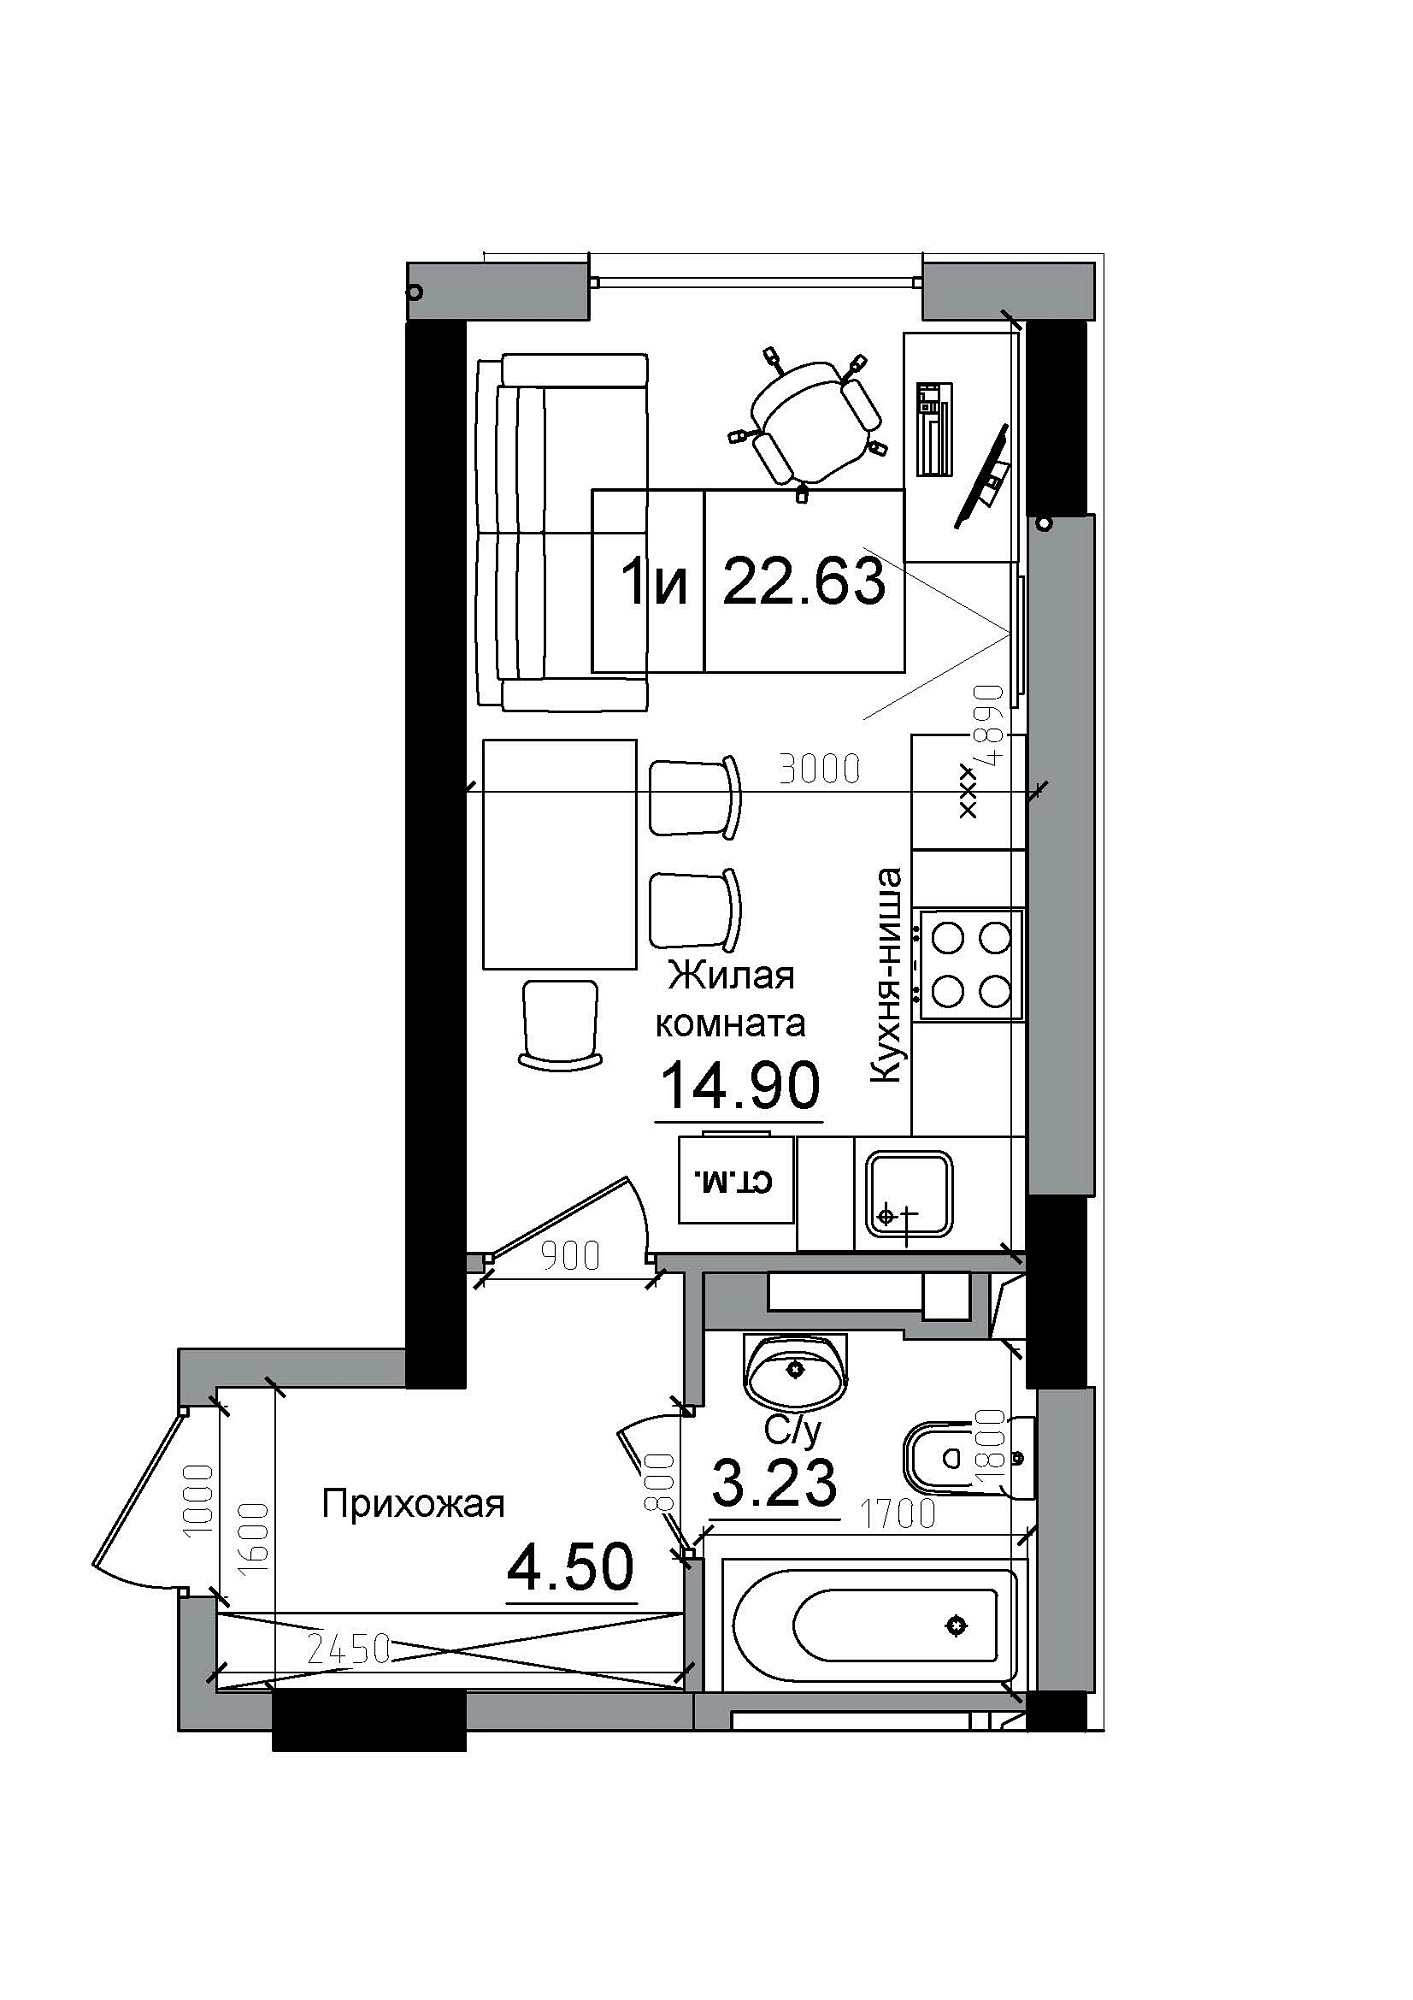 Планування Smart-квартира площею 22.63м2, AB-12-01/00011.